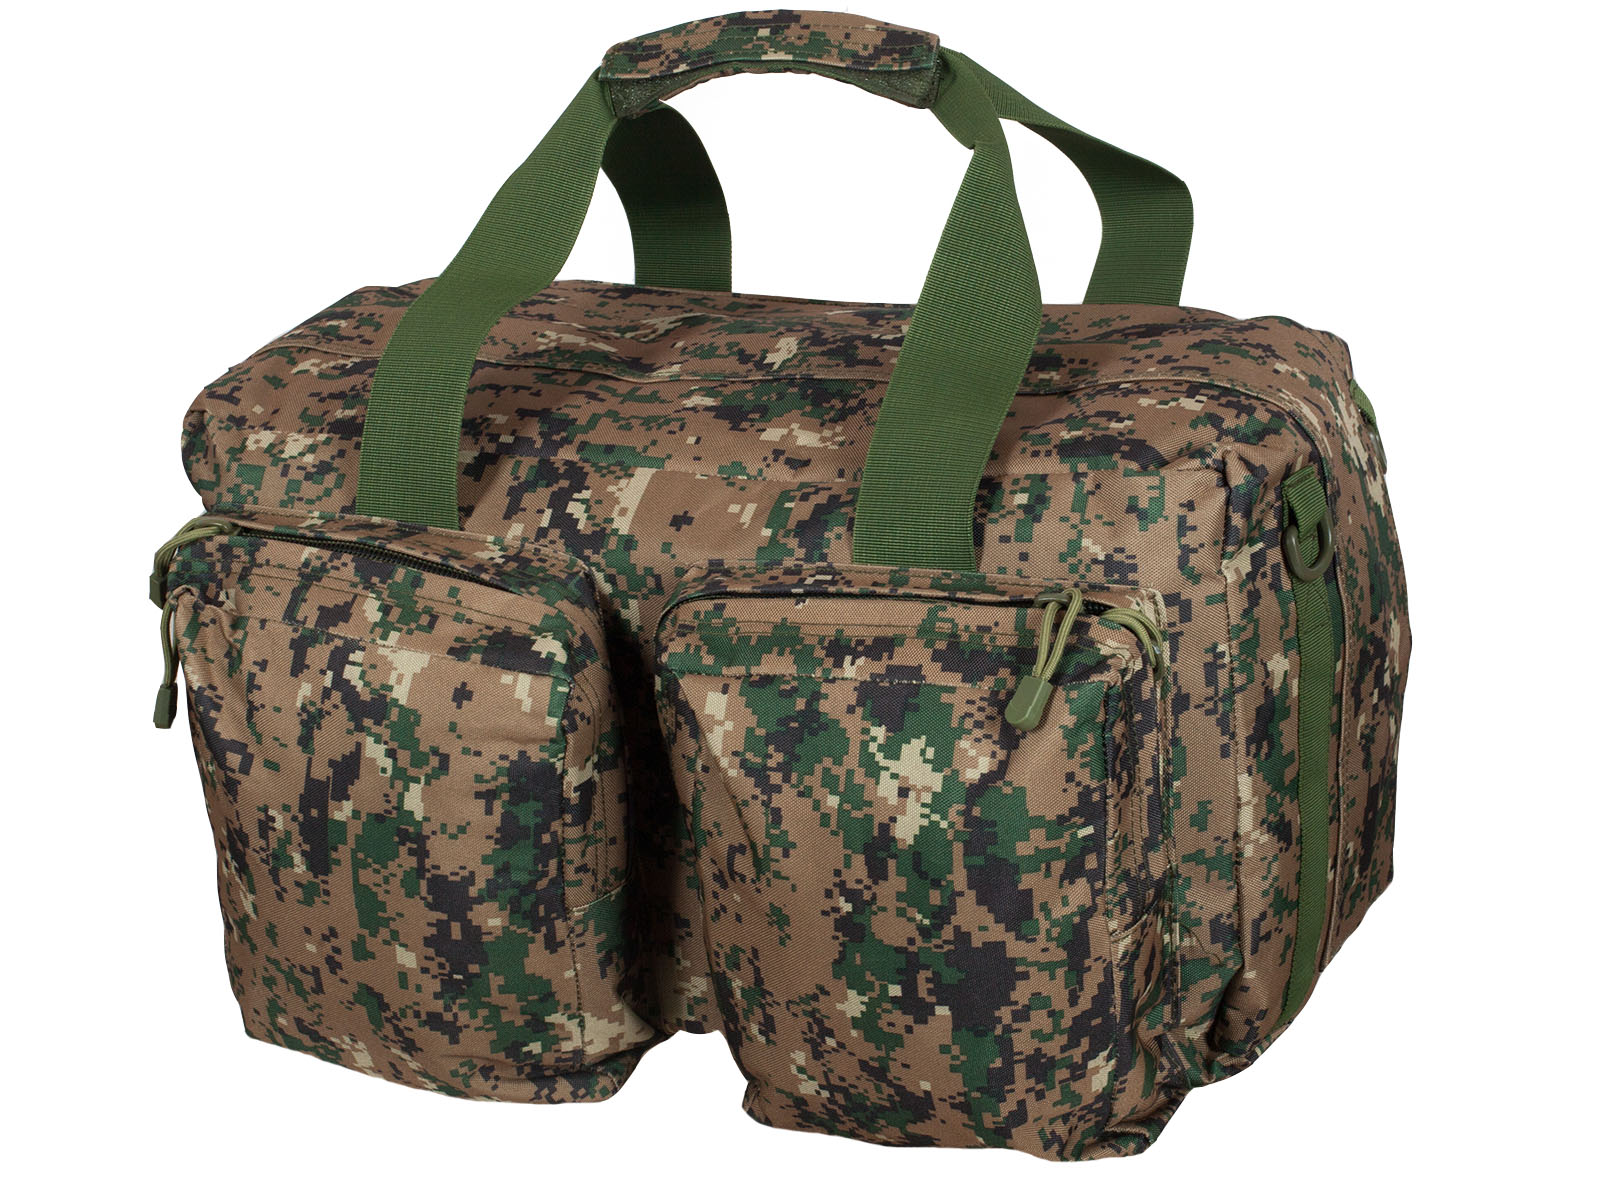 Заплечная тактическая сумка-баул ДПС 